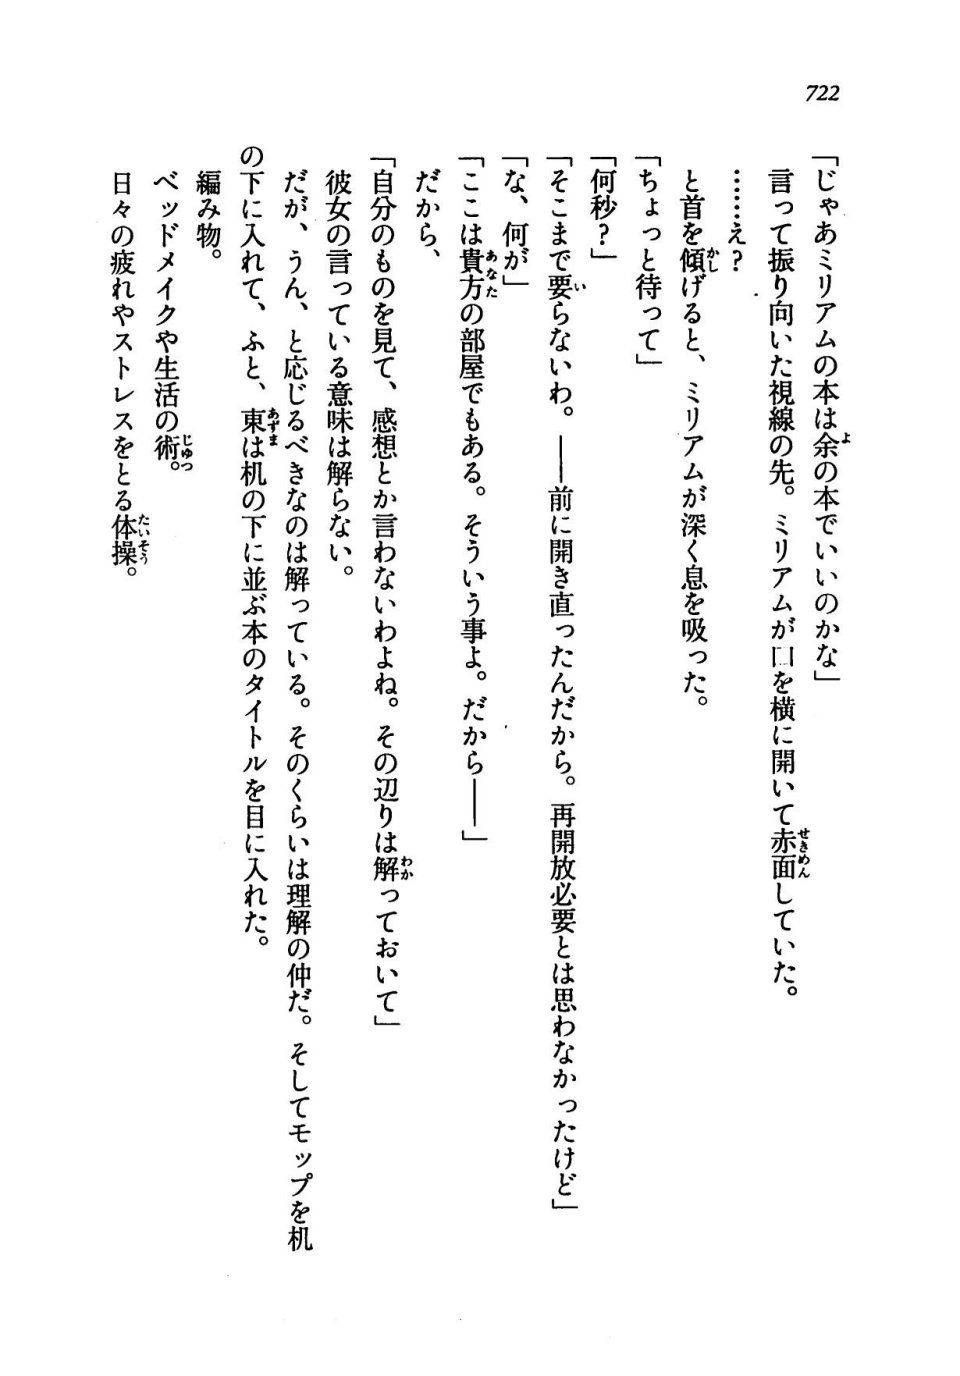 Kyoukai Senjou no Horizon LN Vol 19(8A) - Photo #722